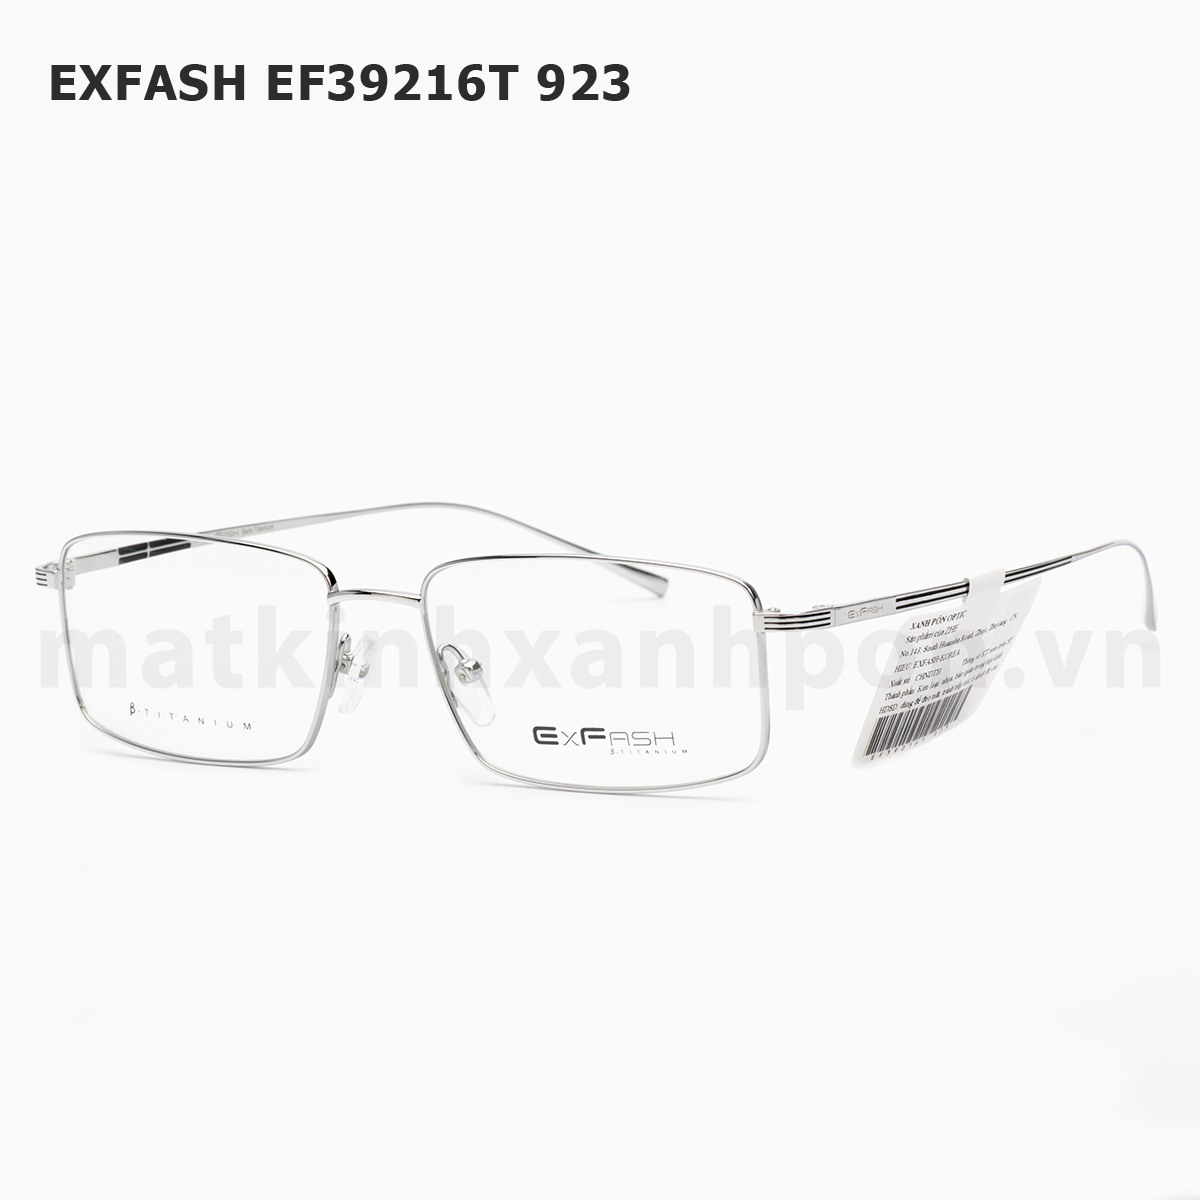 Exfash EF39216T 923